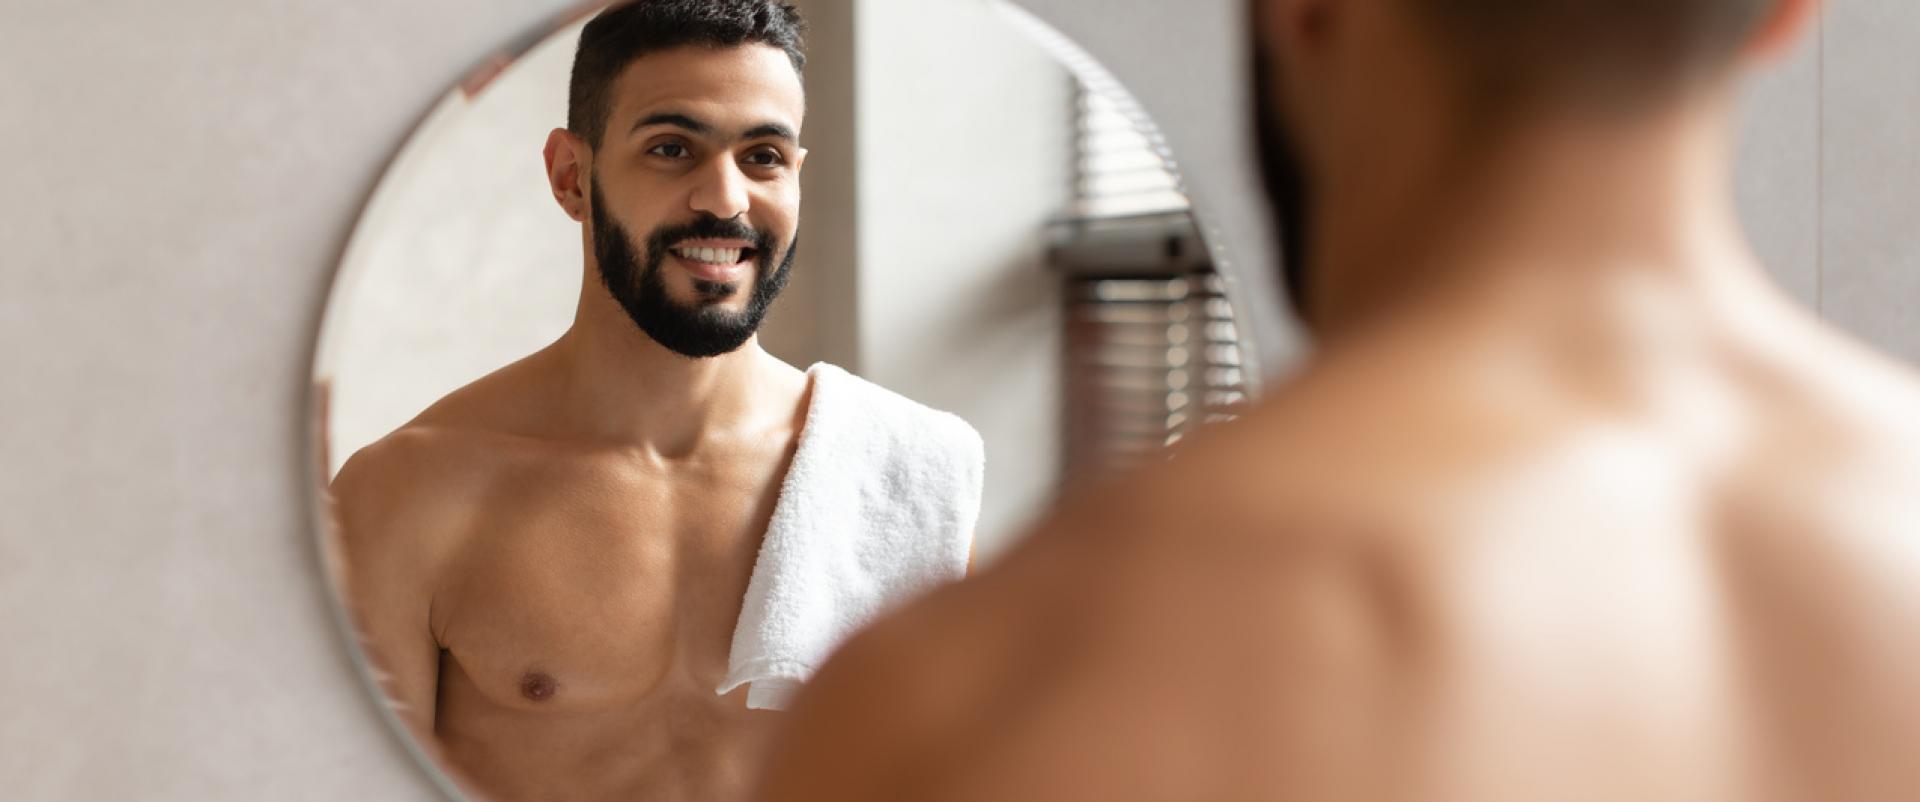 Pielęgnacja brody i włosów męskich, jakiego sprzętu potrzebujesz?